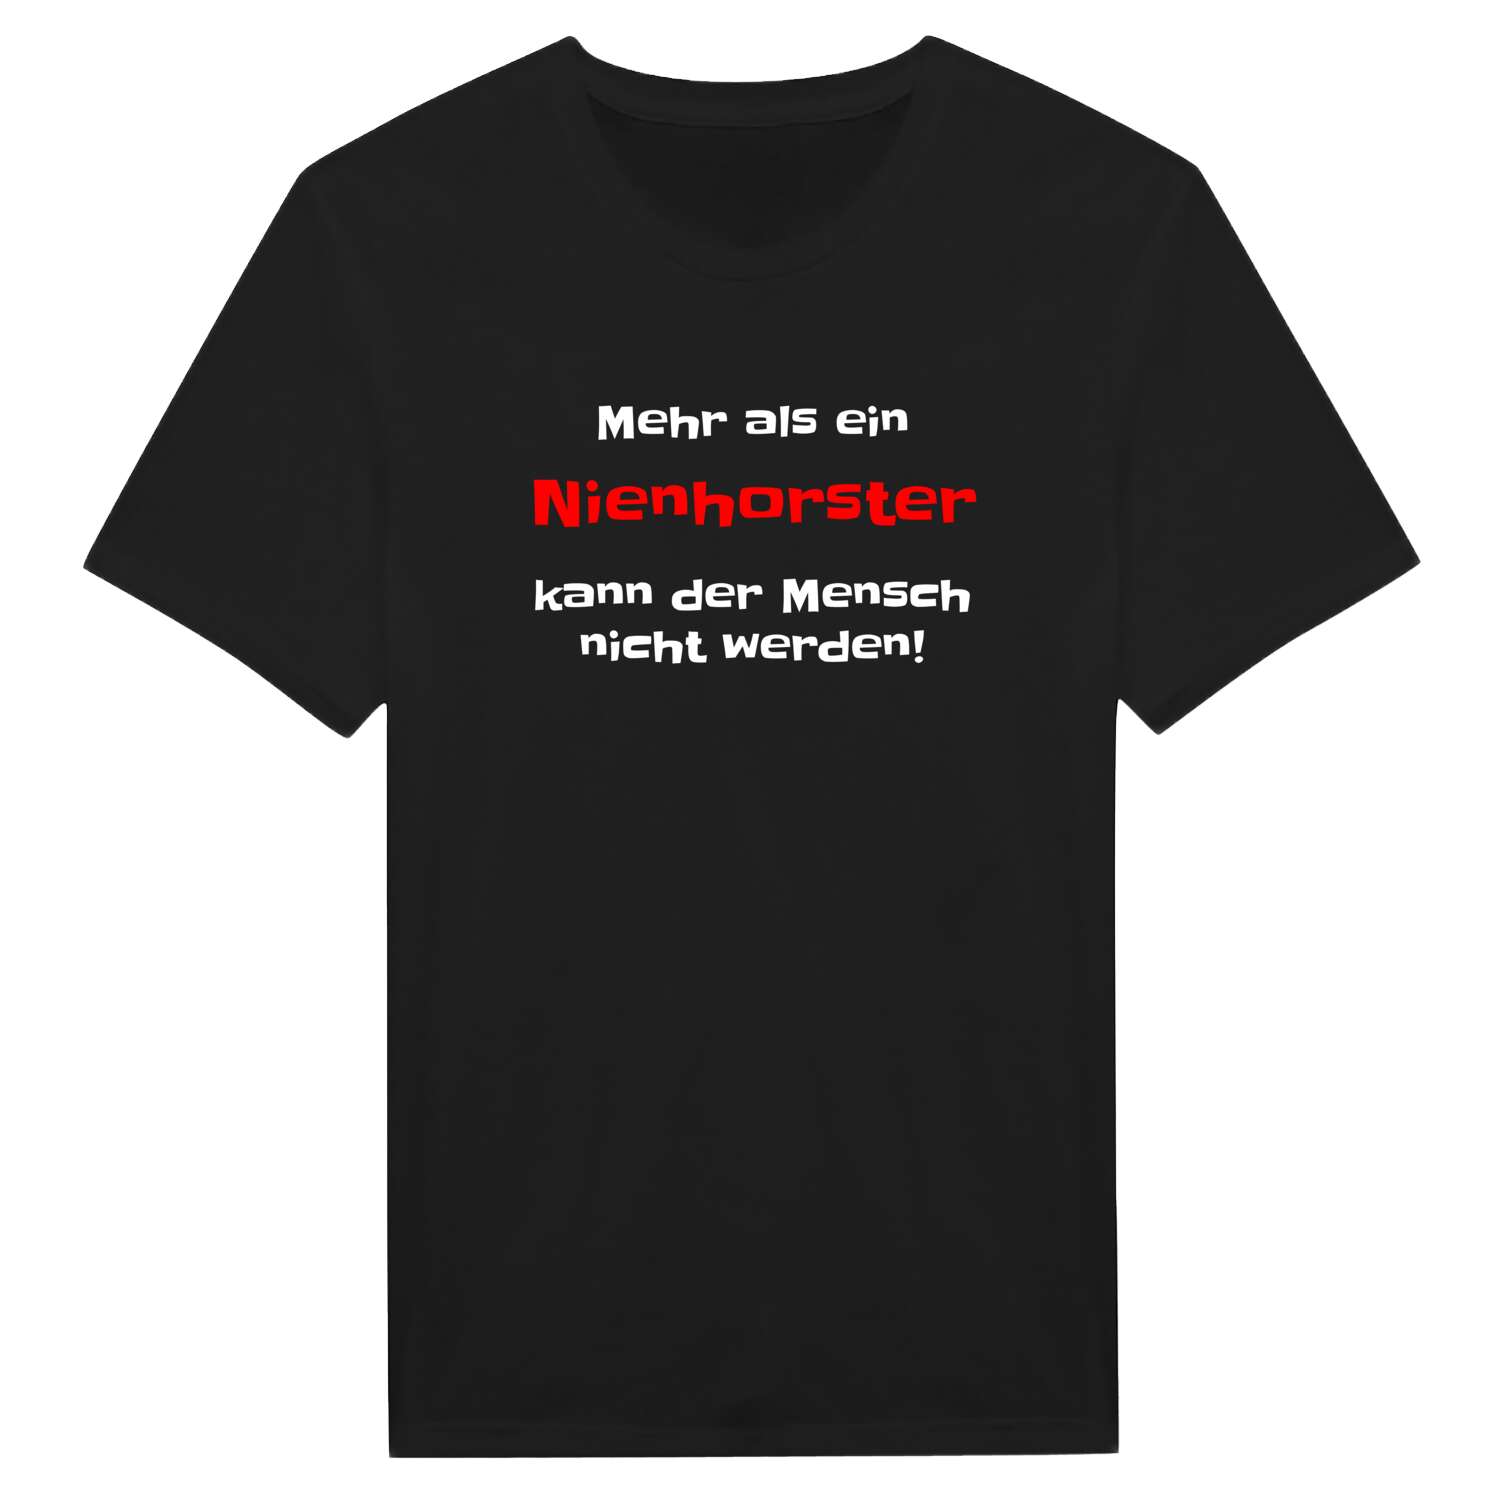 Nienhorst T-Shirt »Mehr als ein«